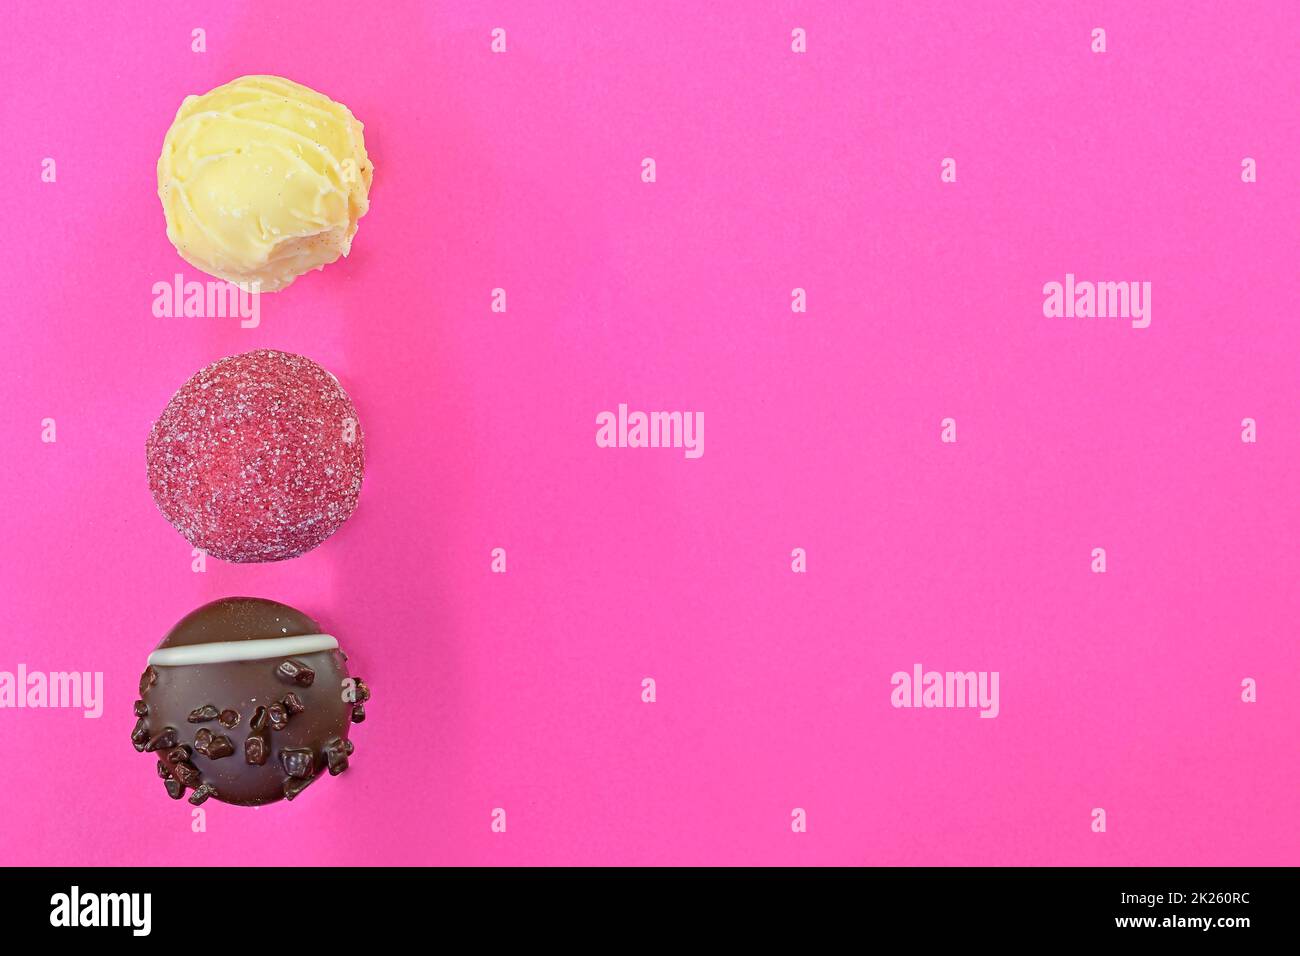 Boni di cioccolato o praline su sfondo rosa. Assortimento di praline al cioccolato su sfondo rosa pastello con spazio per la copia. Disposizione piatta, vista dall'alto Foto Stock